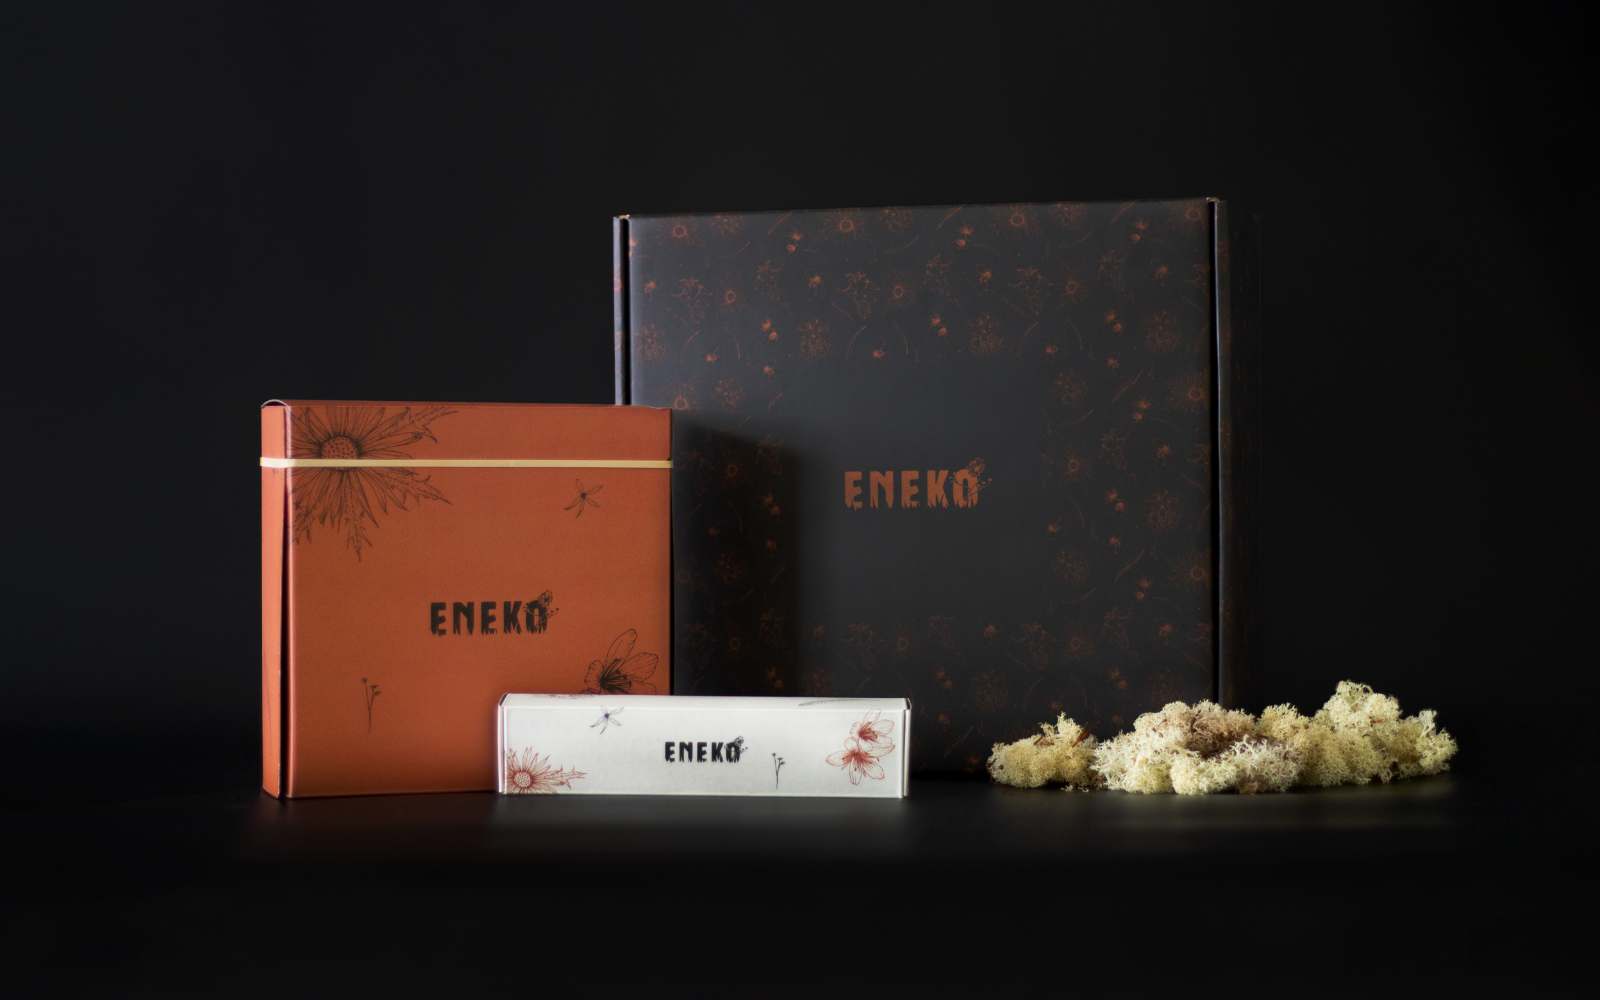 Eneko Shop by Crisiscreativa - Creative Work